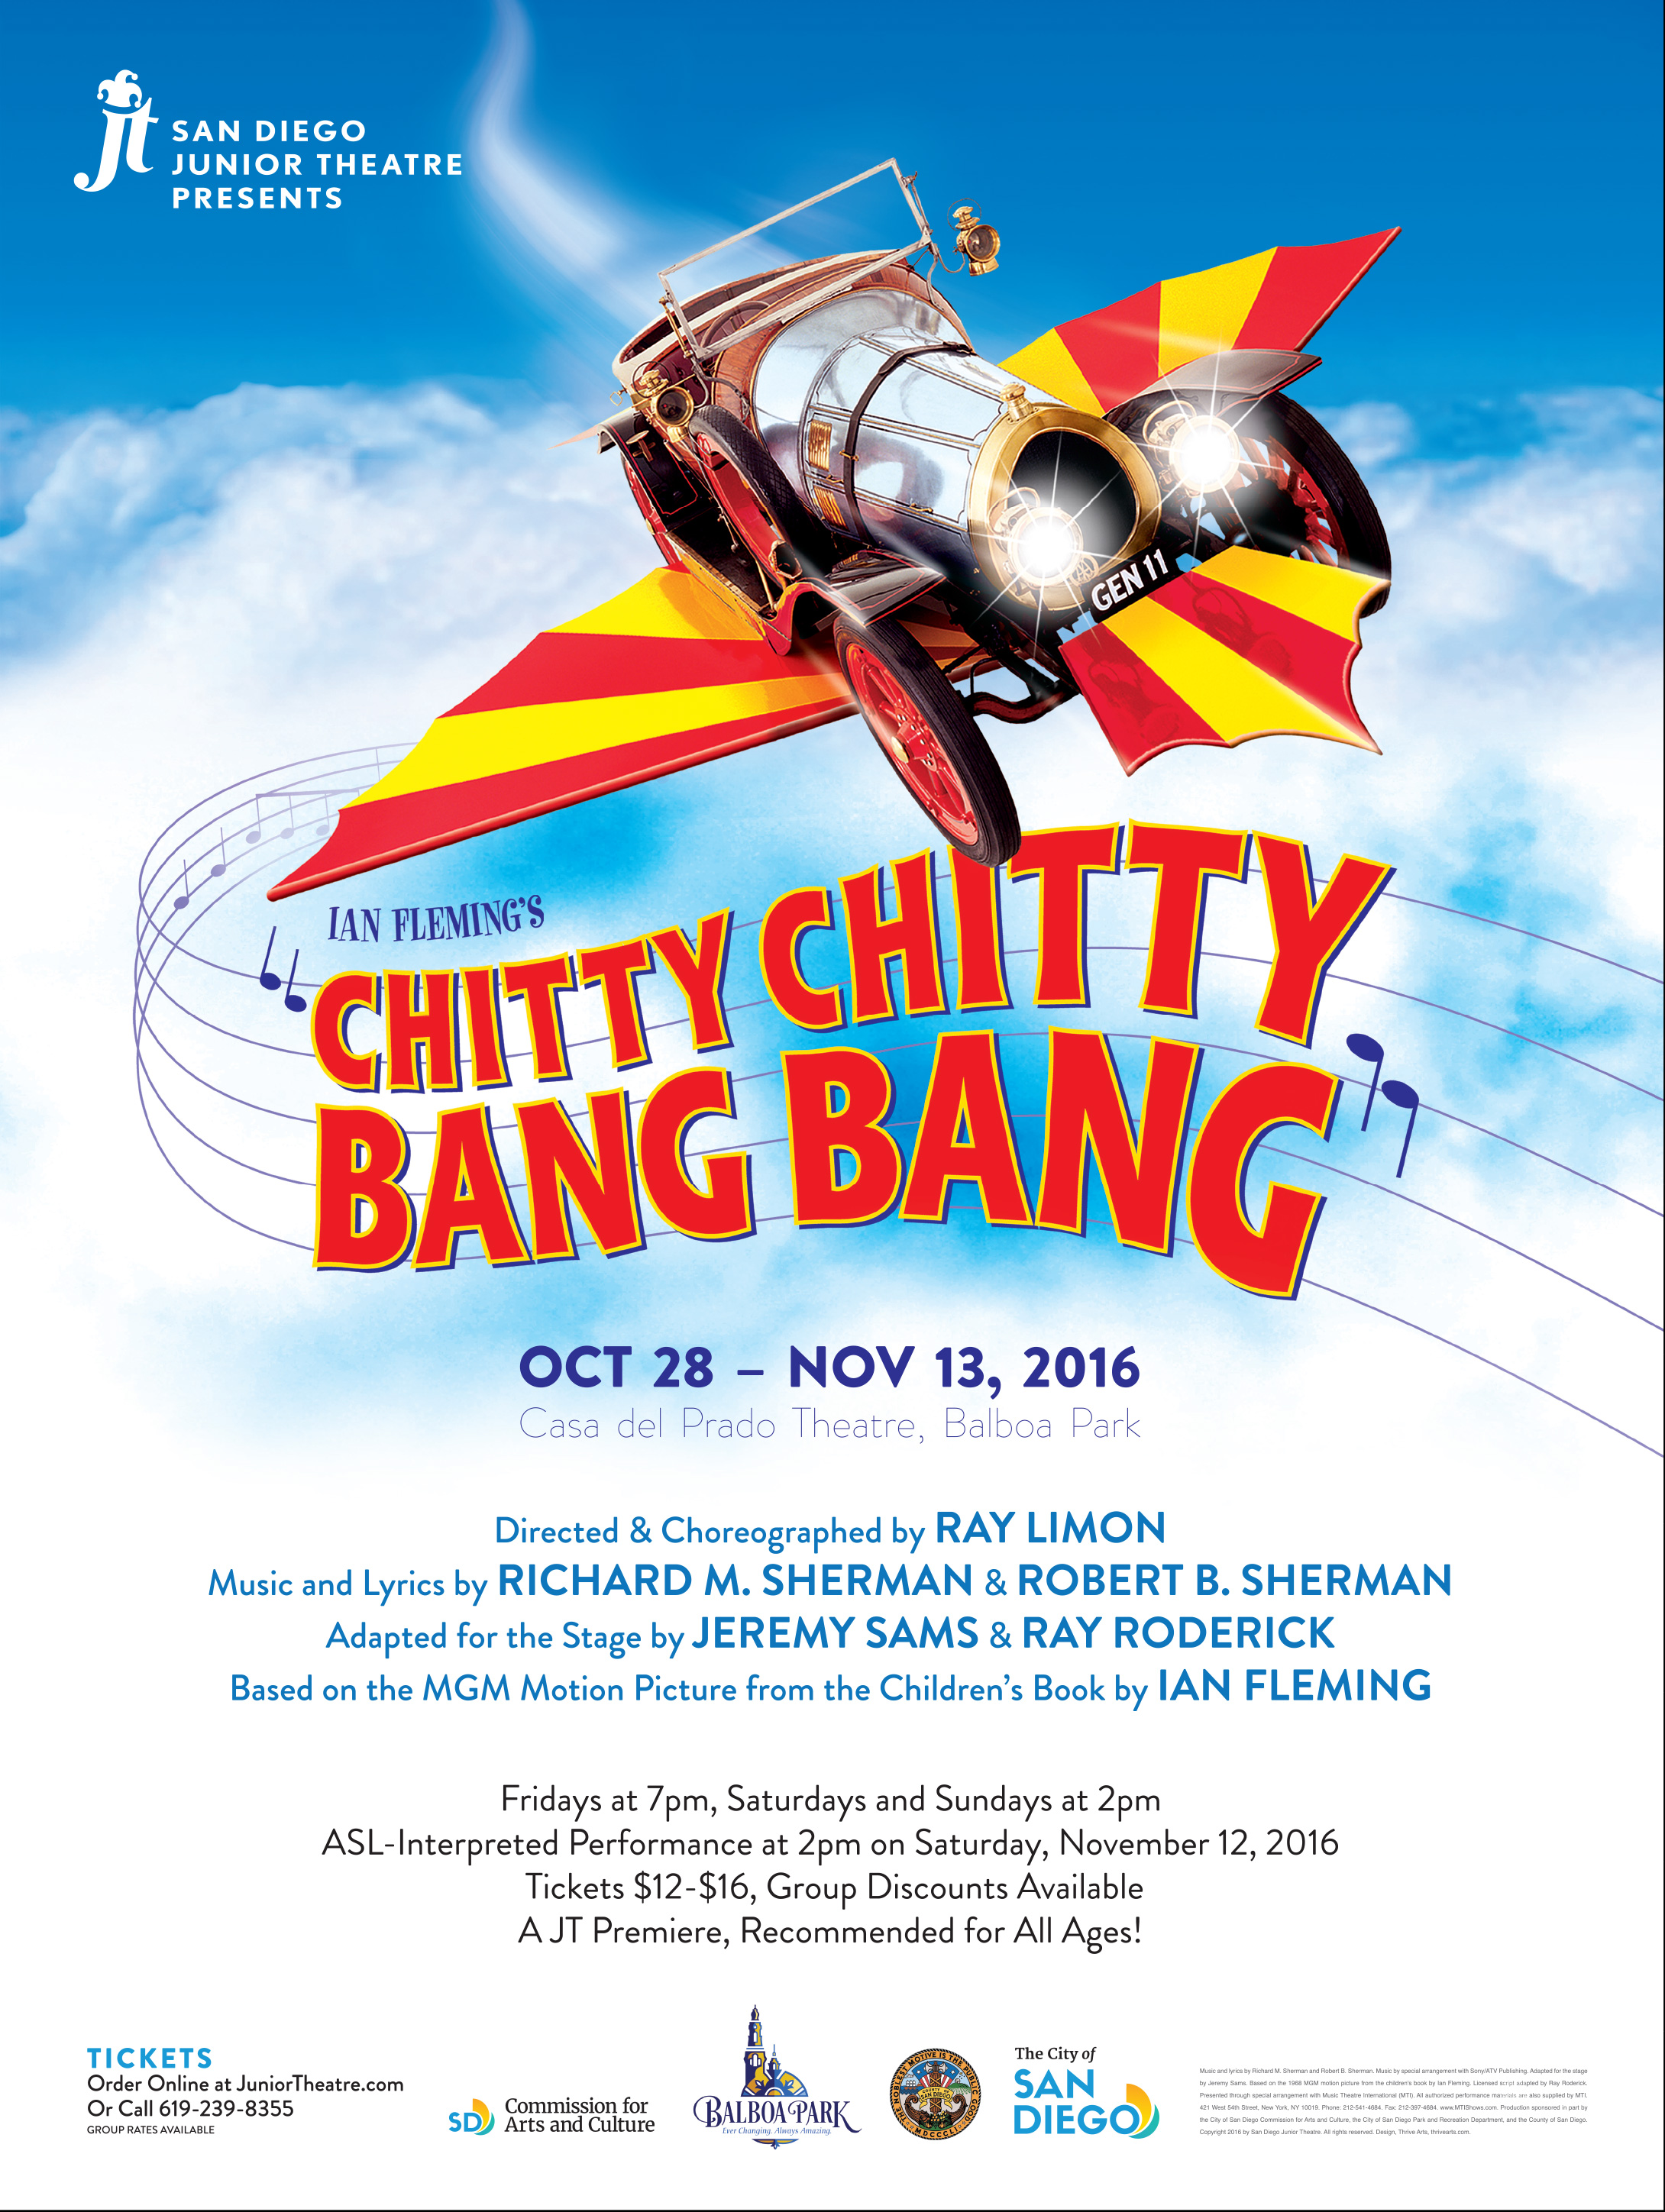 Chitty chitty bang bang. Chitty Chitty Bang. Chitty Chitty Bang Bang 1968. Bang Bang poster.